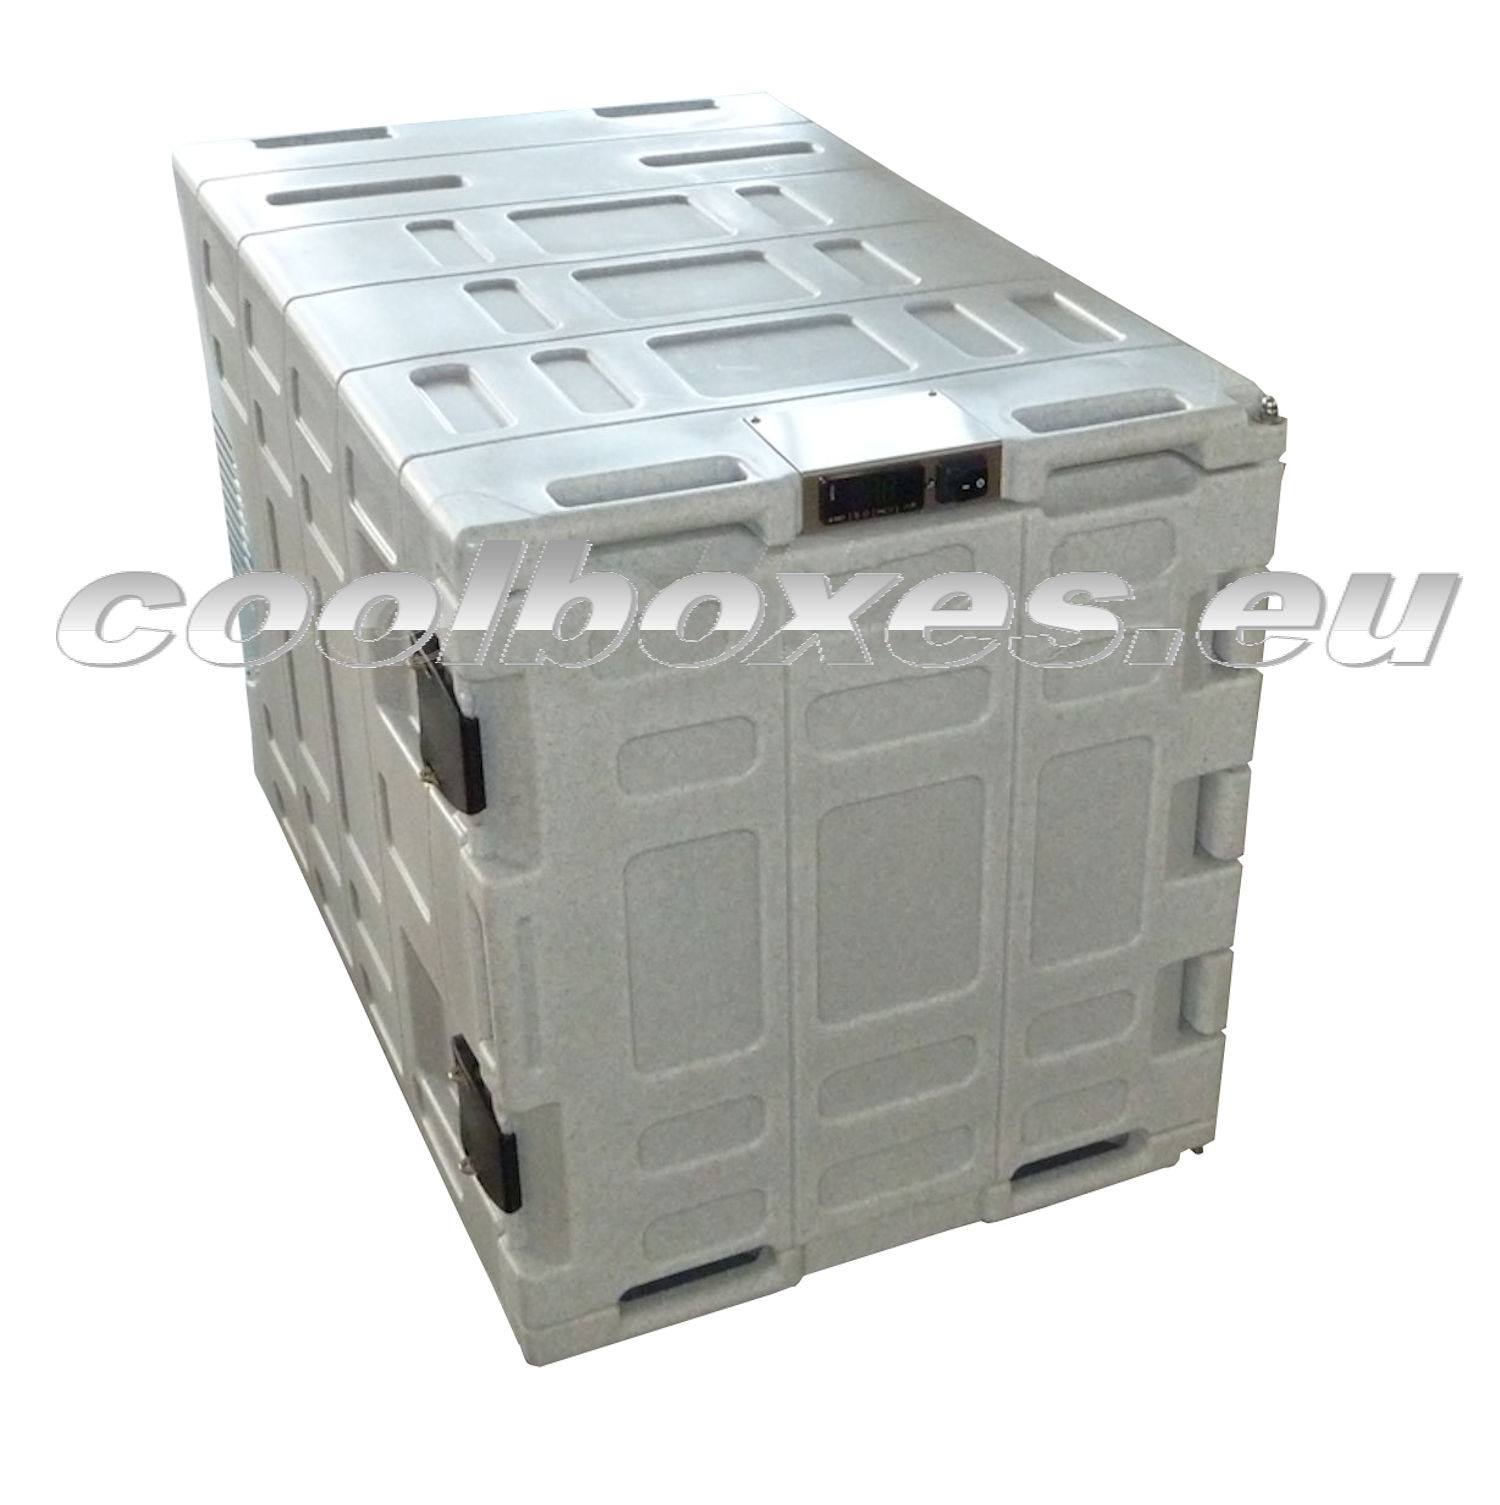 Mobilní chladící / mrazící box COLDTAINER (EUROENGEL)  F0140 FDN +25°C až - 21°C